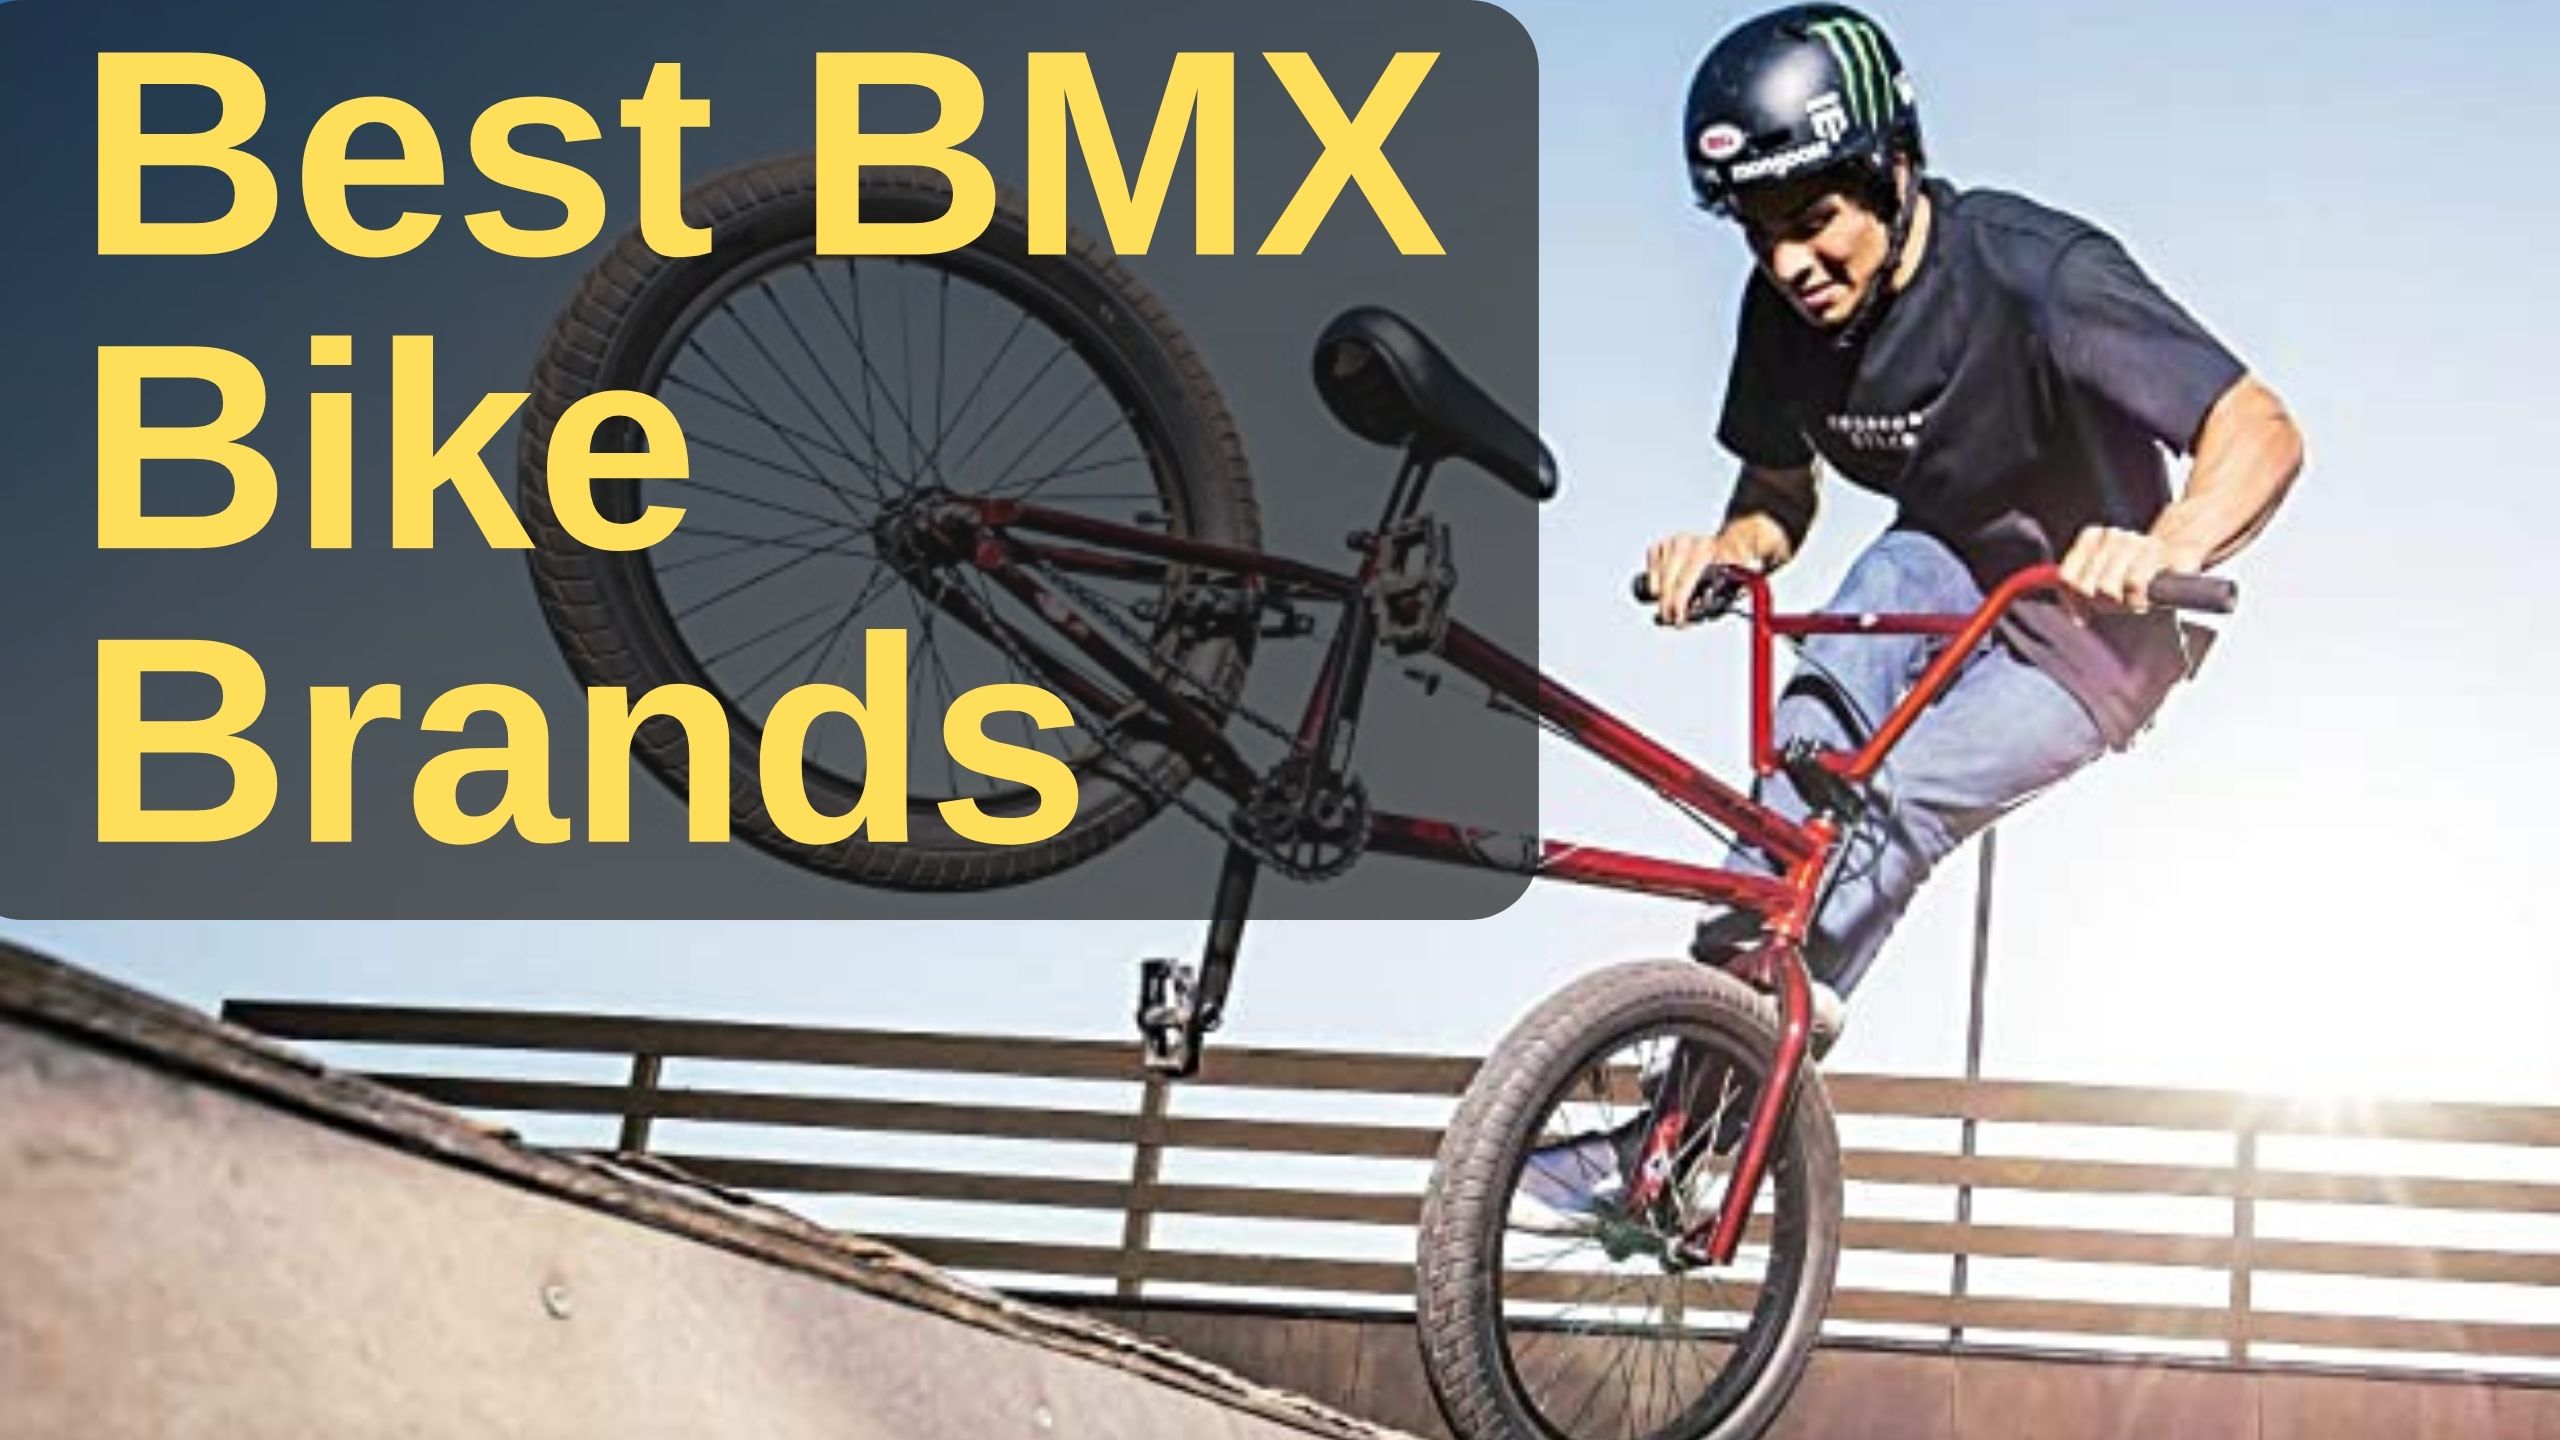 Best BMX Bike Brands